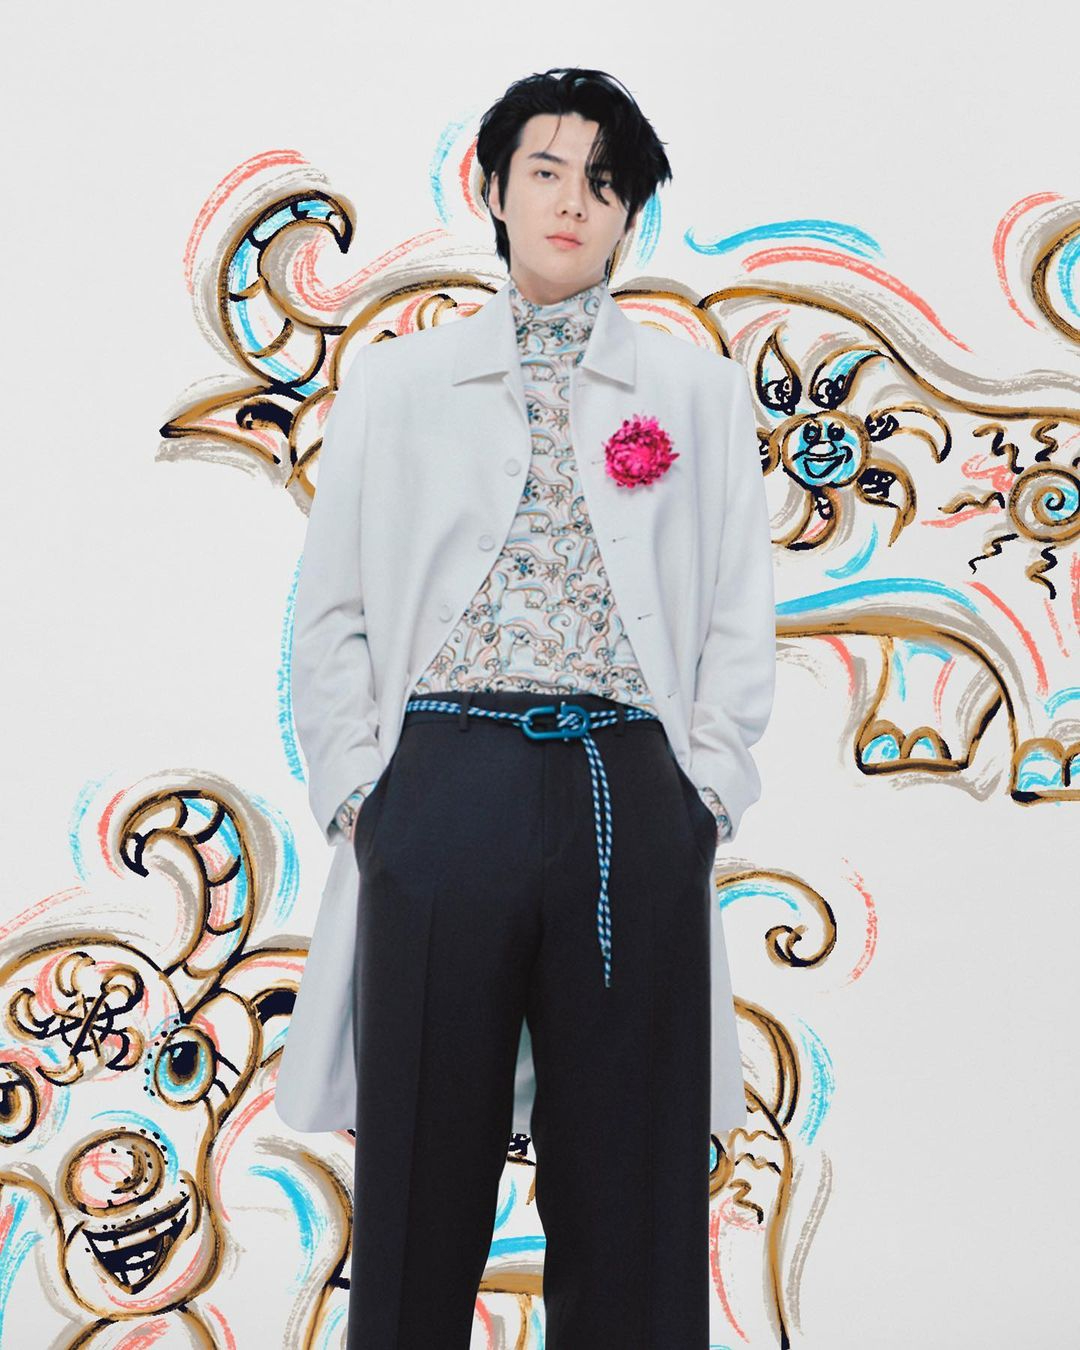 Участник EXO О Се Хун в съемке коллекции Dior Men сезона осень-зима 2021/22